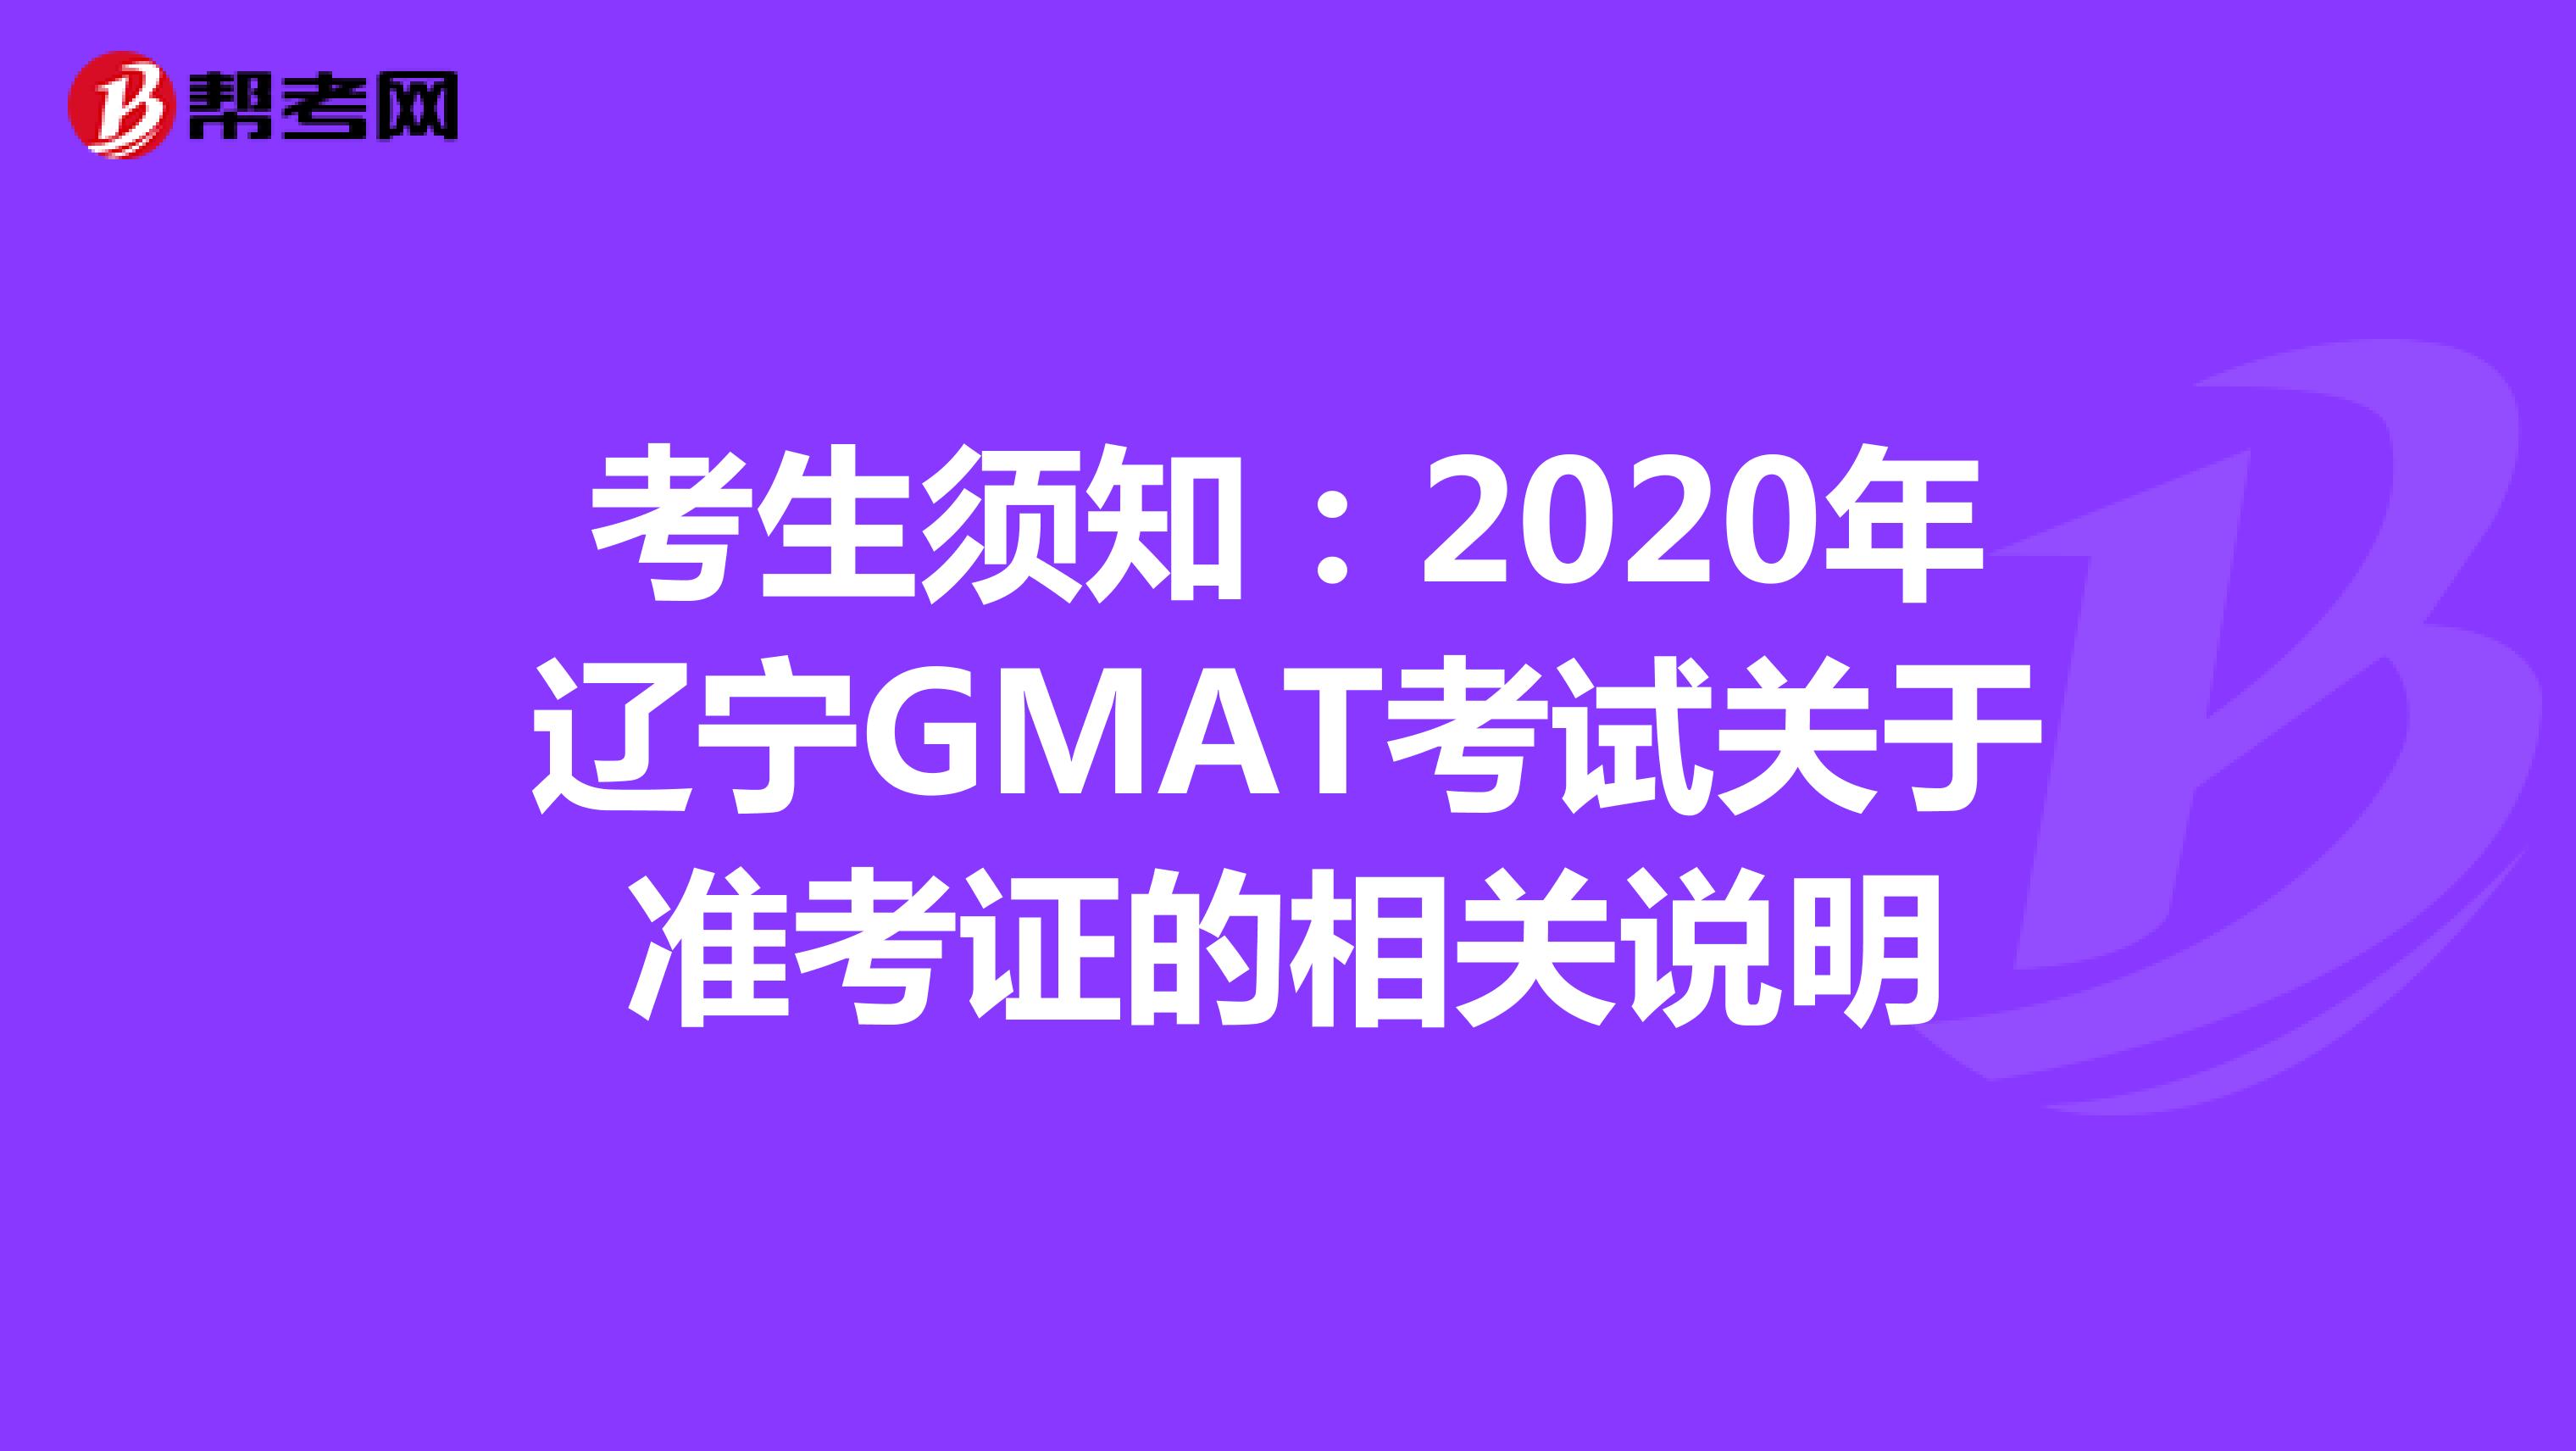 考生须知：2020年辽宁GMAT考试关于准考证的相关说明